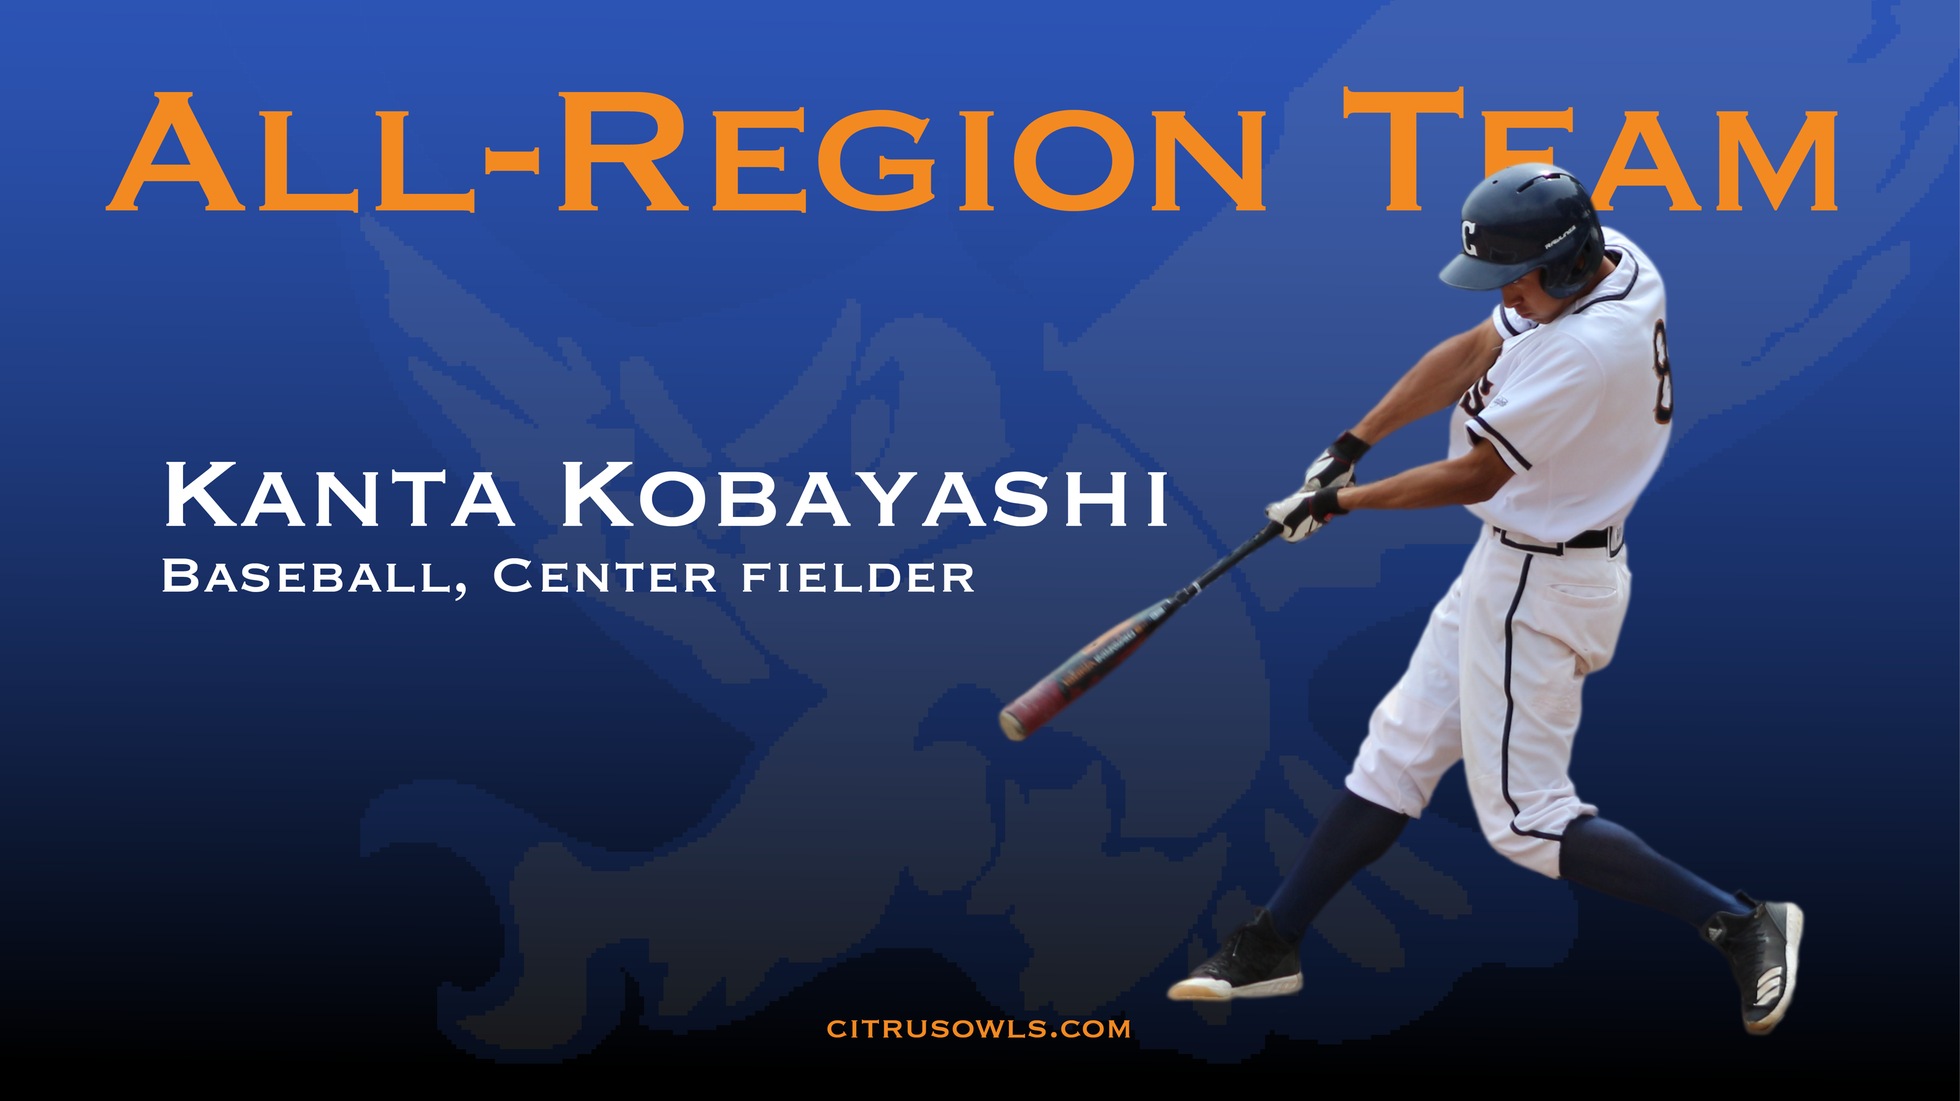 Owl Center Fielder Kanta Kobayashi Selected to All-Region Team